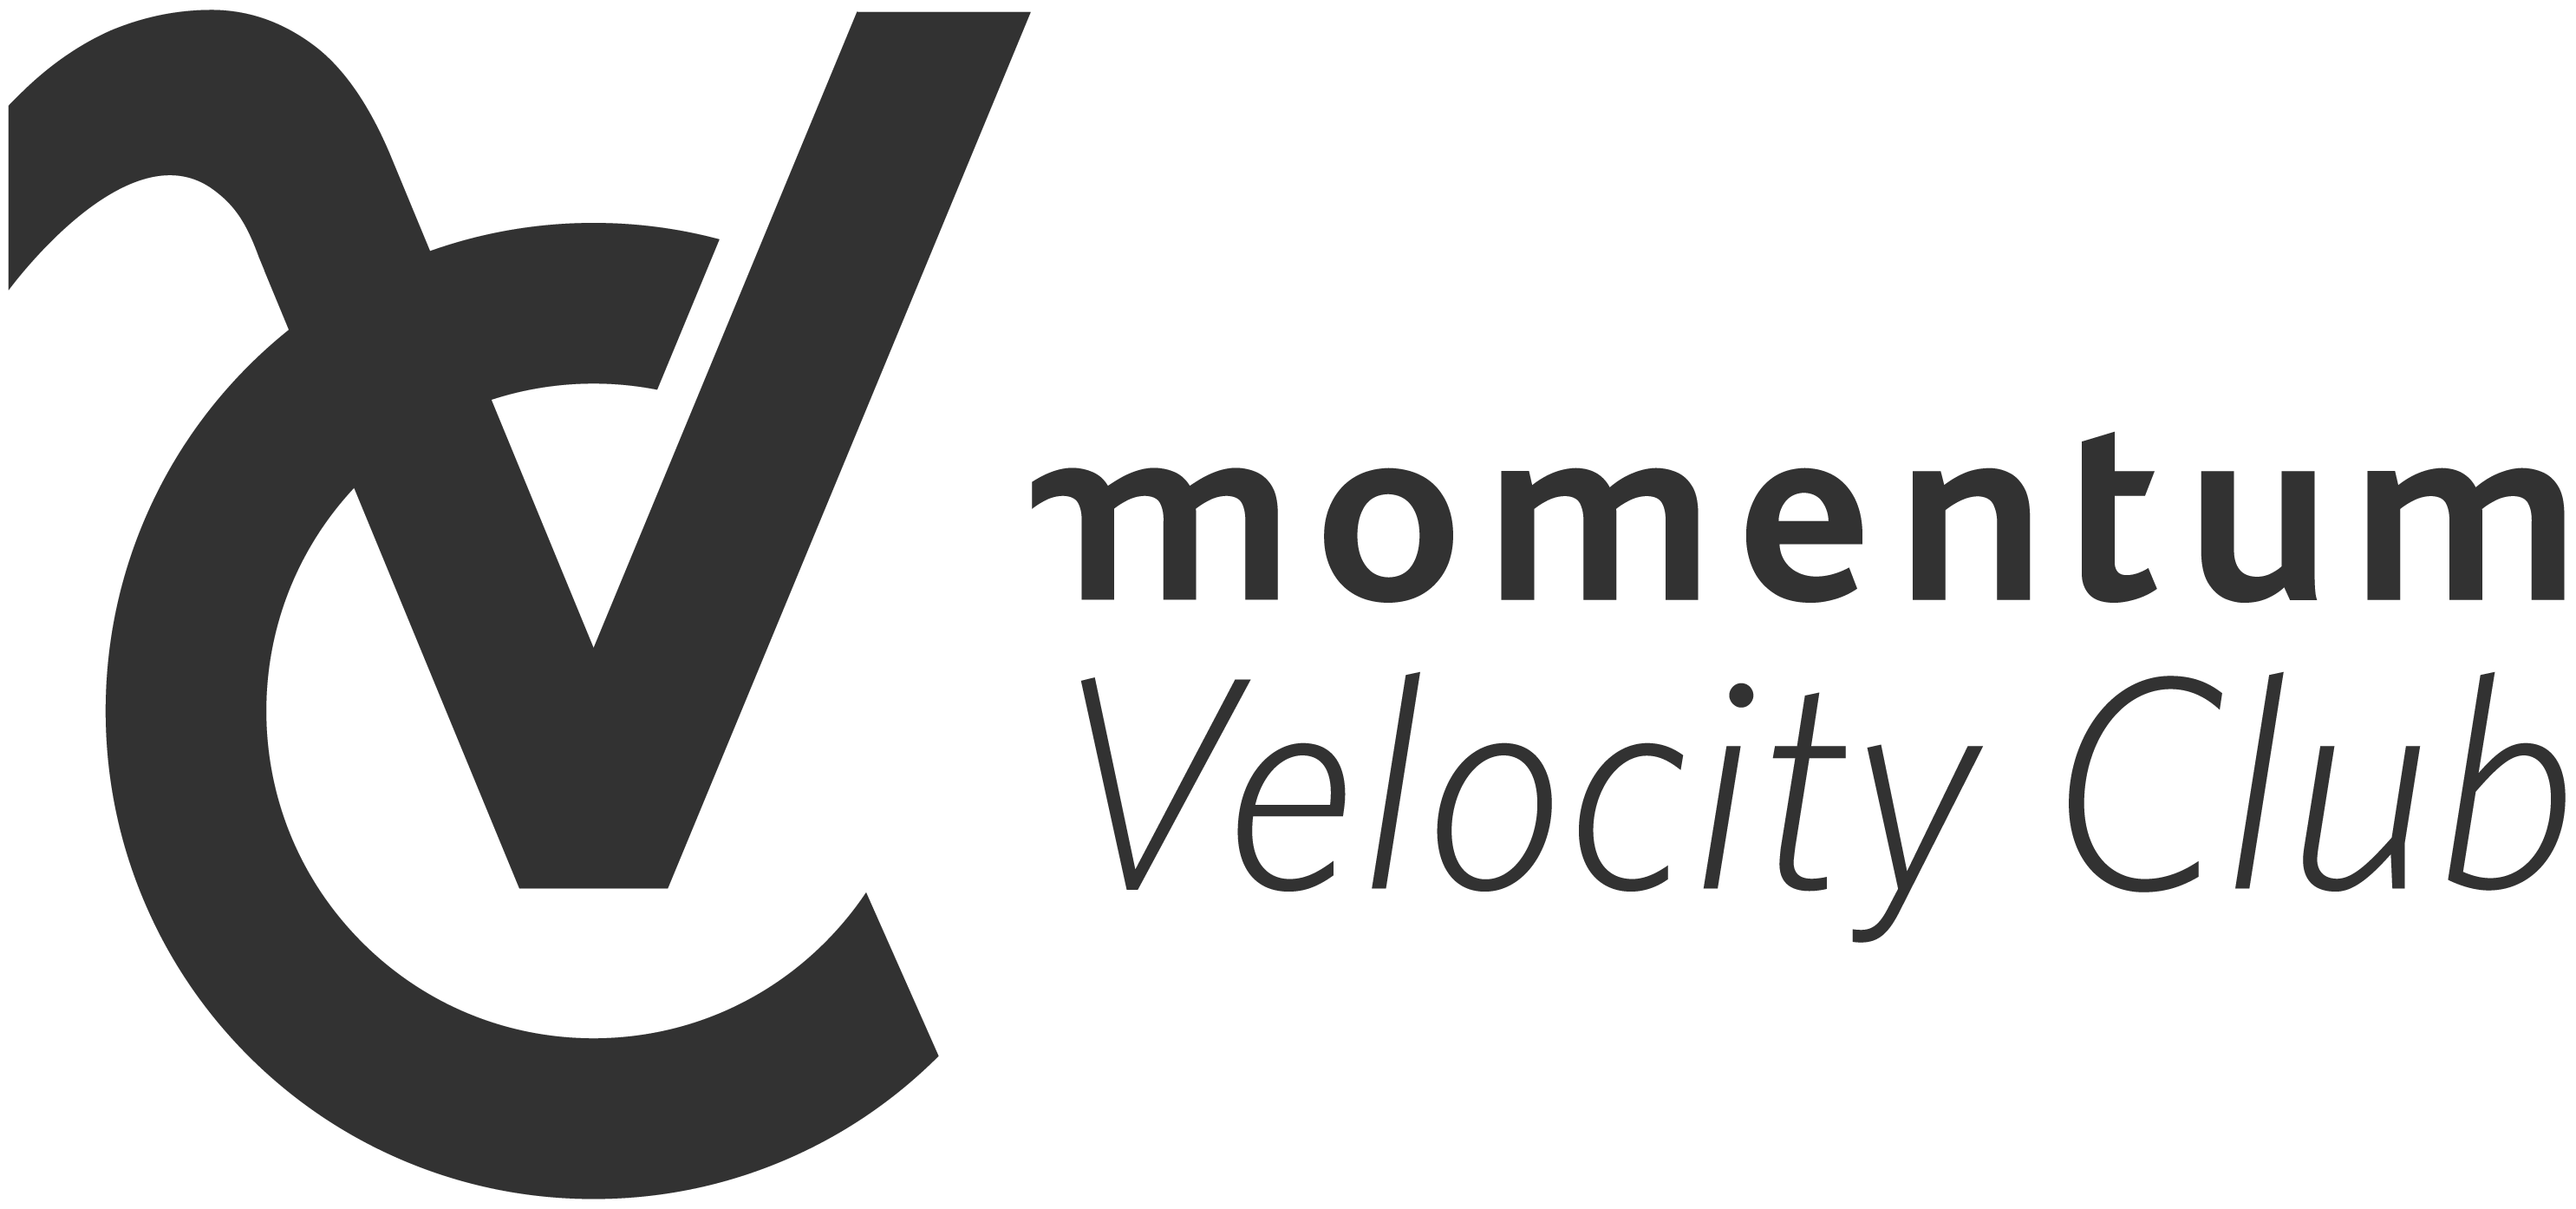 Velocity Club